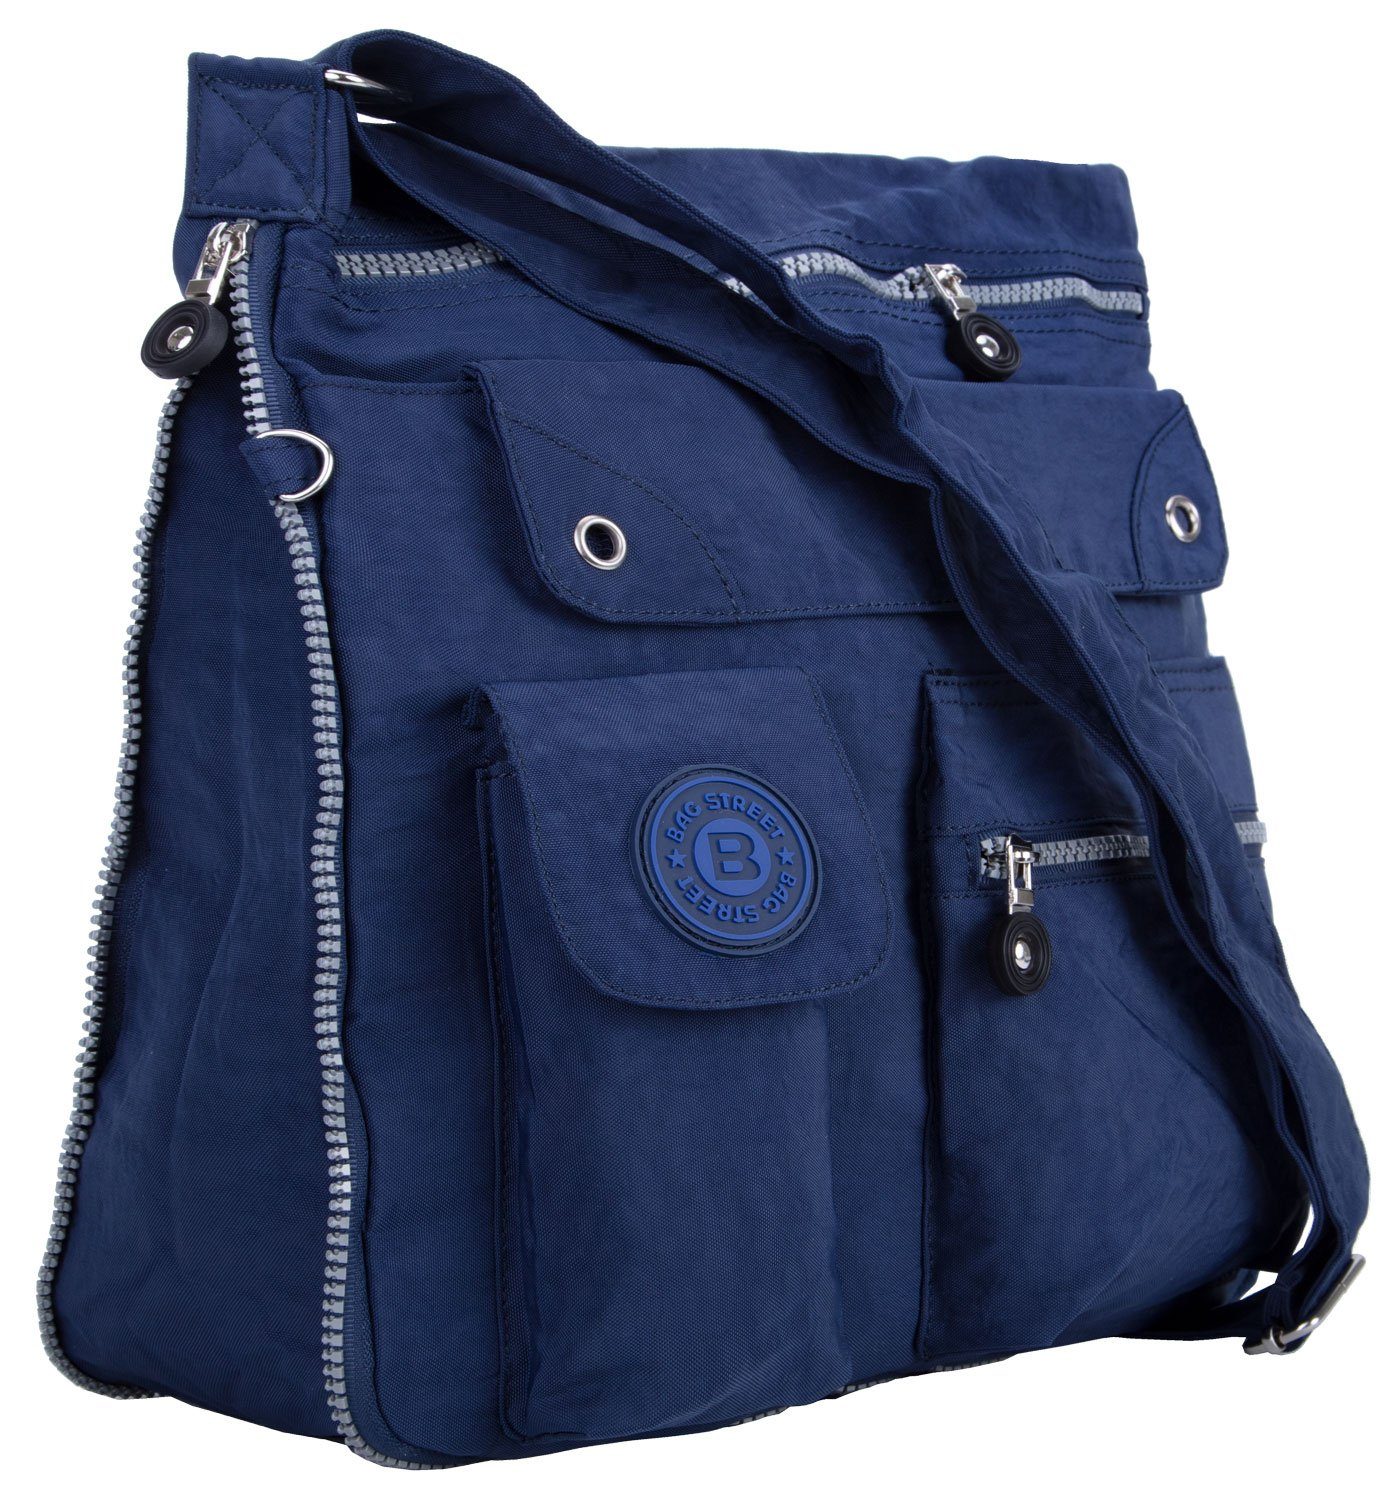 Stauraum Reise Sportive City-Tasche Urlaub compagno Umhänge-Tasche Bag Henkeltasche, mit viel blau Kuriertasche